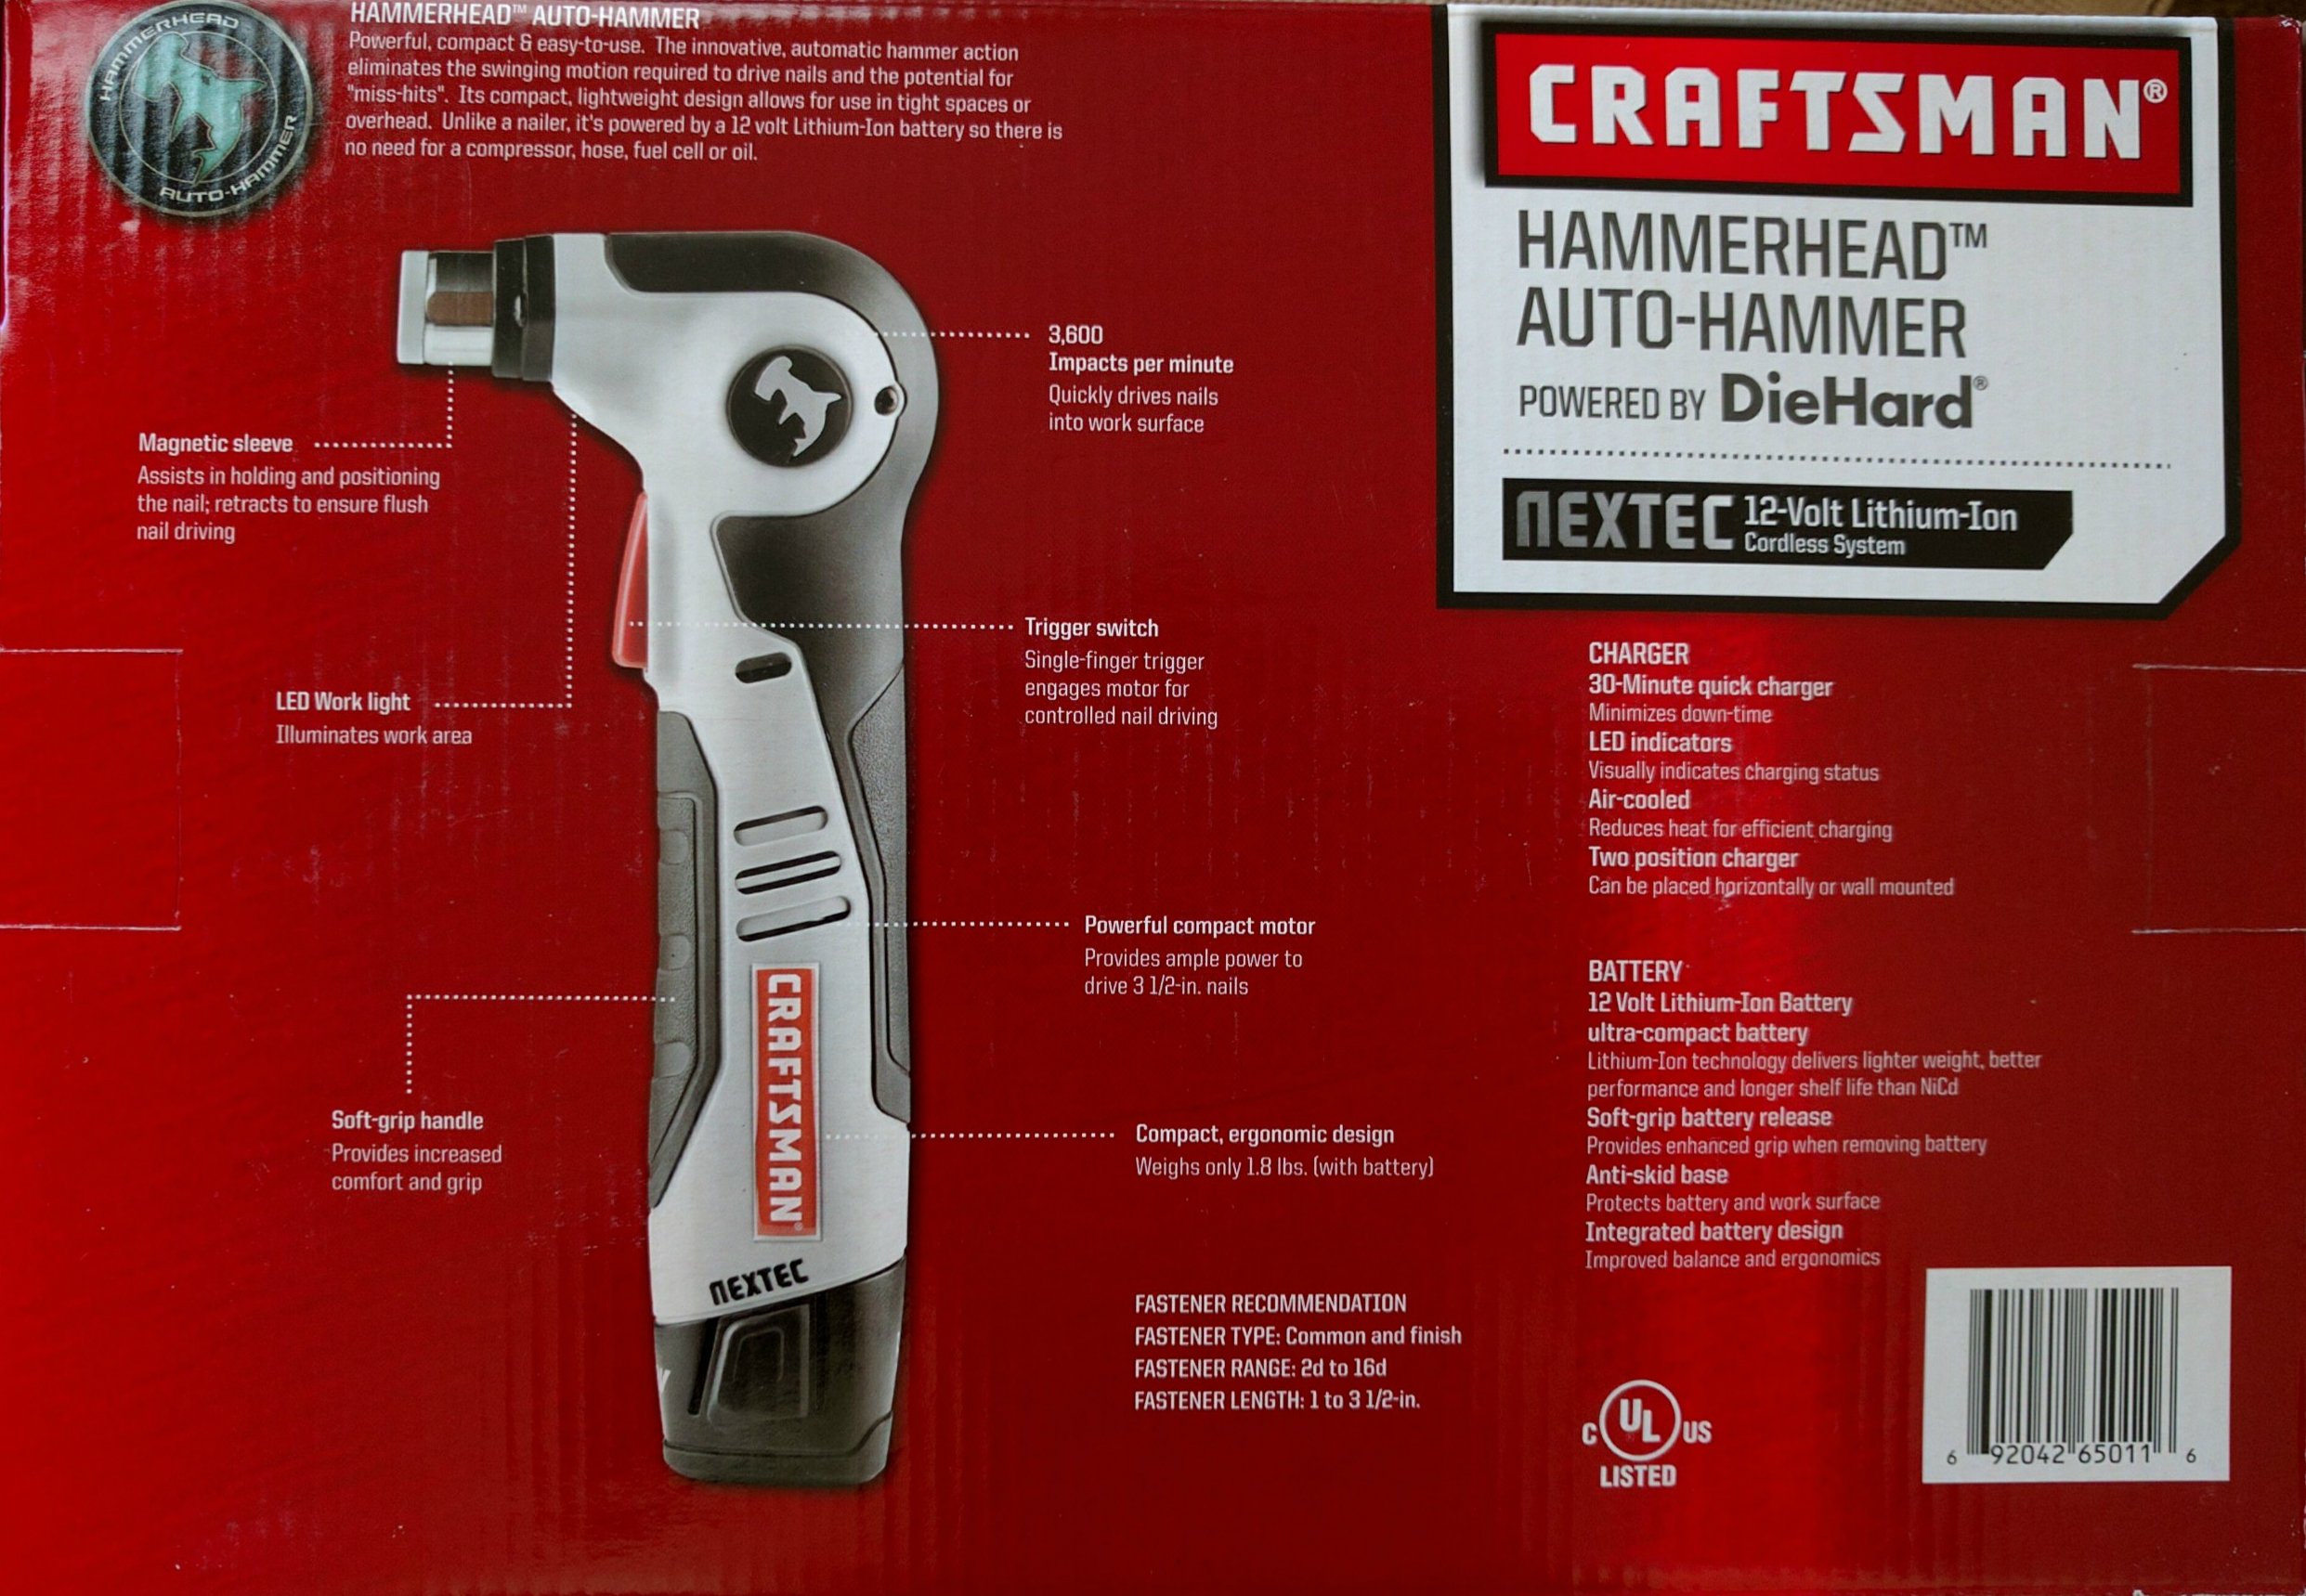 Craftsman 9-11818 Nextec 12-volt Lithium-lon Hammerhead Auto Hammer